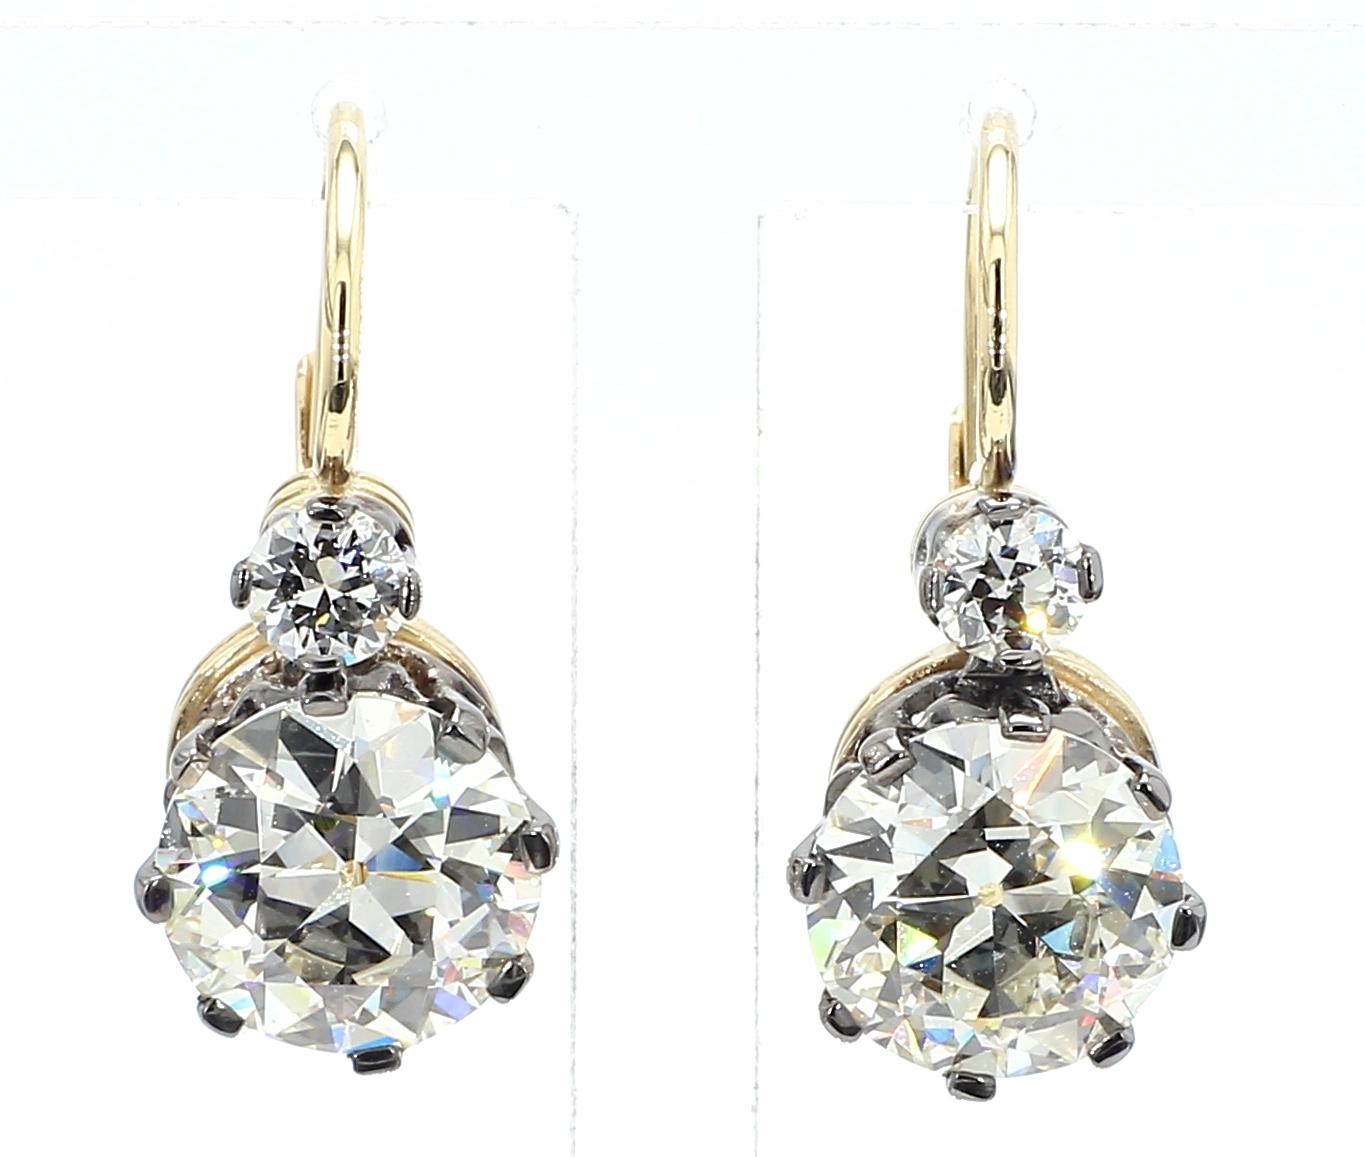 L'Eleg antique en diamant de 6,02 carats est un bijou remarquable qui respire l'élégance et la sophistication. Réalisée avec une attention particulière aux détails, cette boucle d'oreille met en valeur un superbe diamant de taille ronde de 6,02